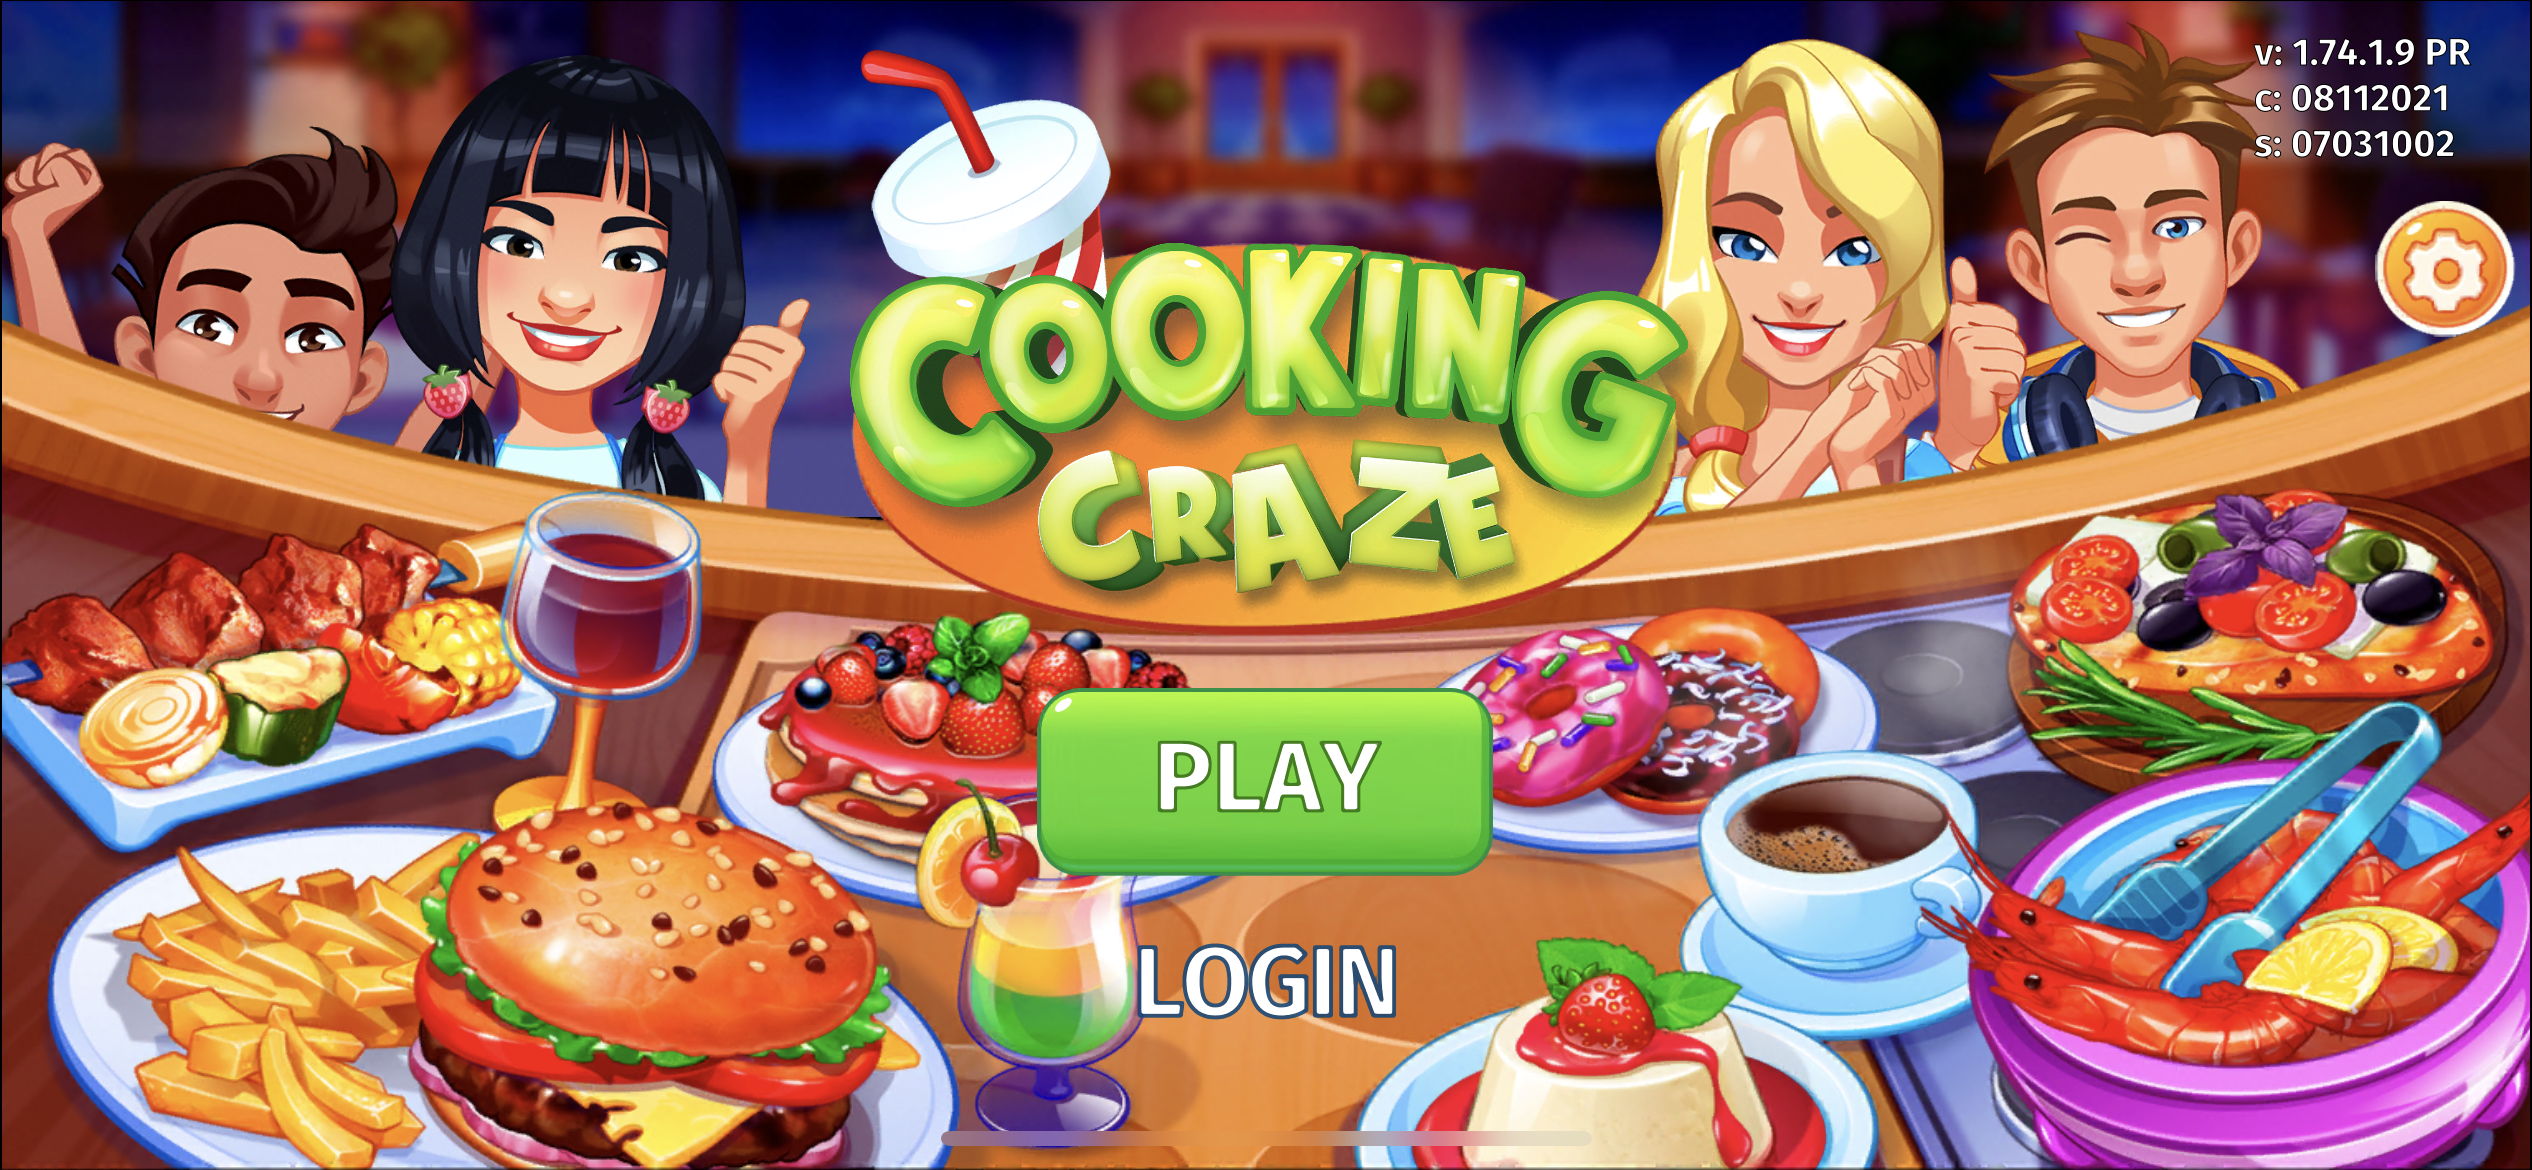 CookingCraze1.png